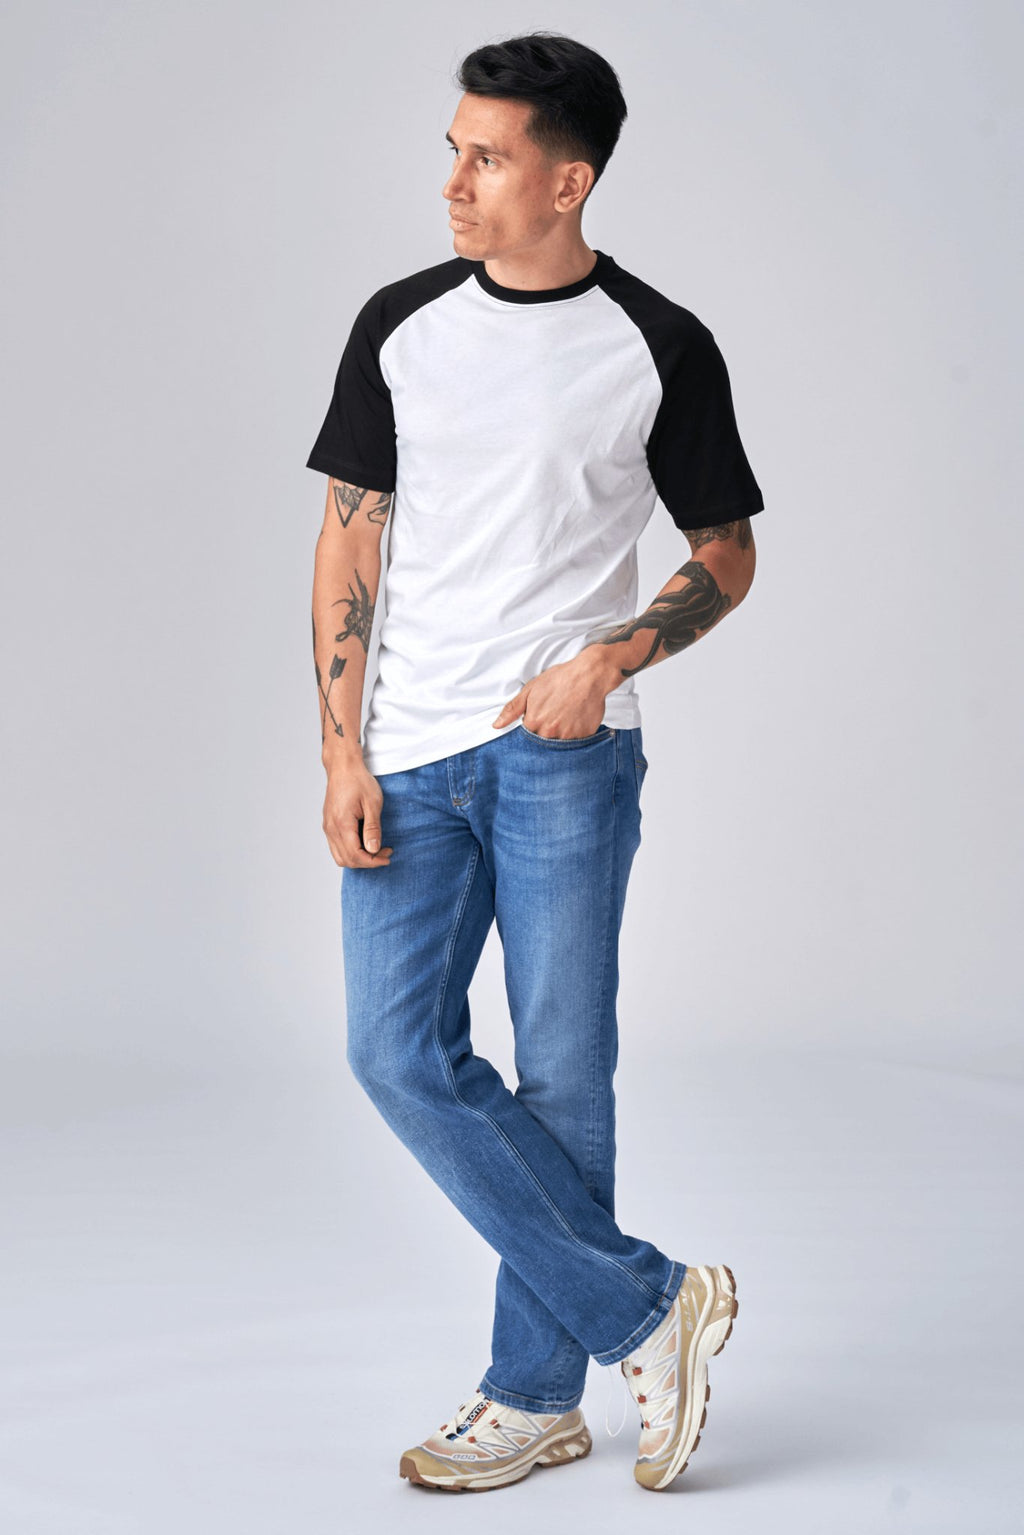 Camiseta básica de Raglan - Blanco y negro